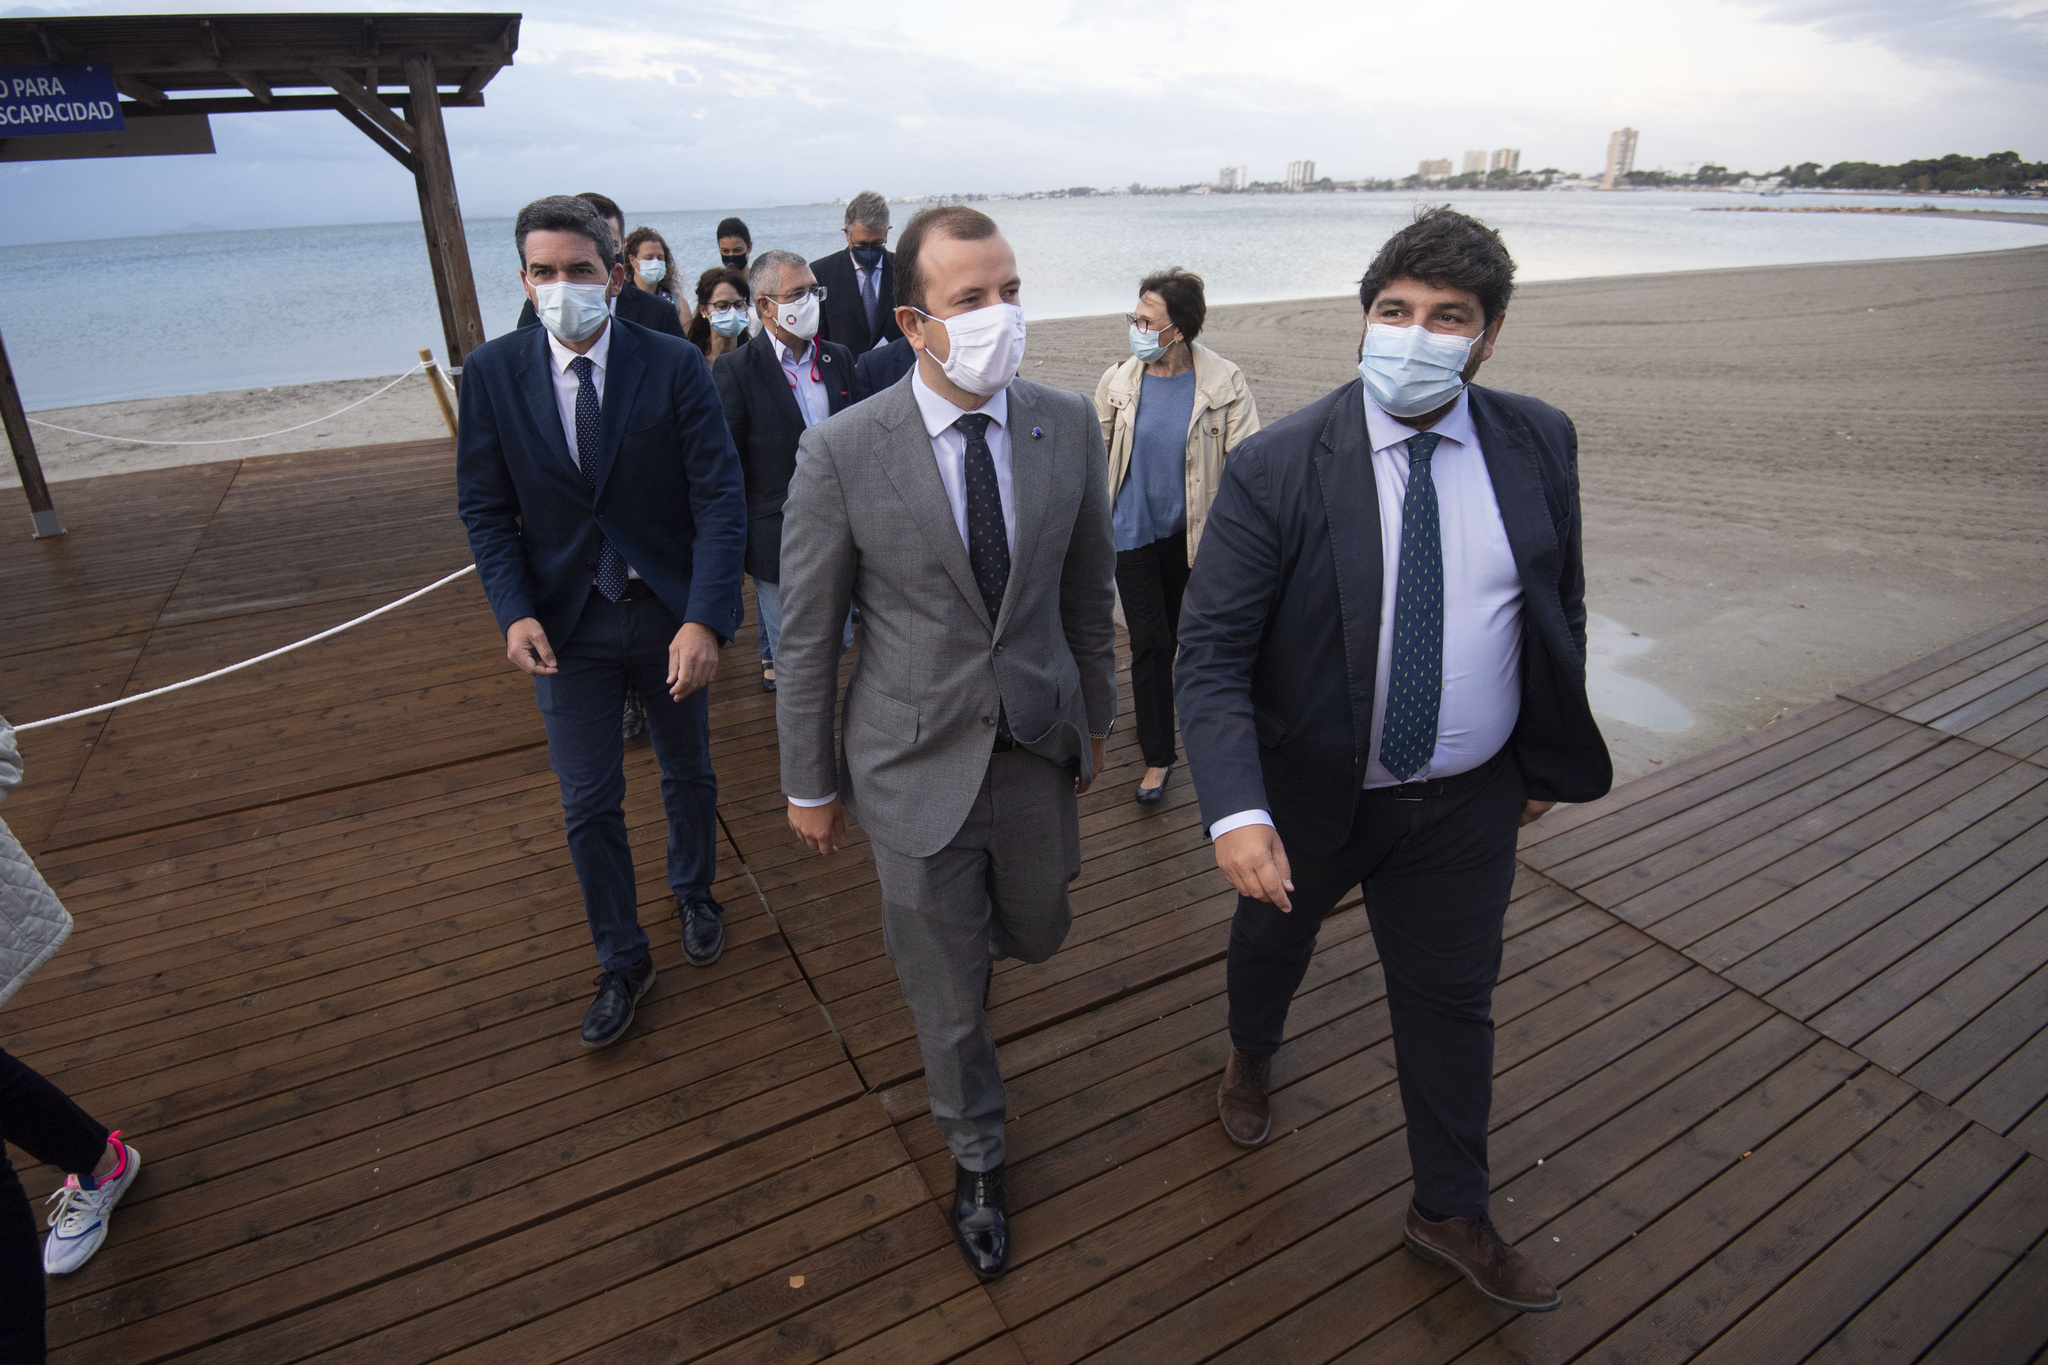 El presidente de la Región de Murcia, junto al comisario europeo de Medio Ambiente, durante la visita que ambos realizaron al Mar Menor el pasado 21 de septiembre.